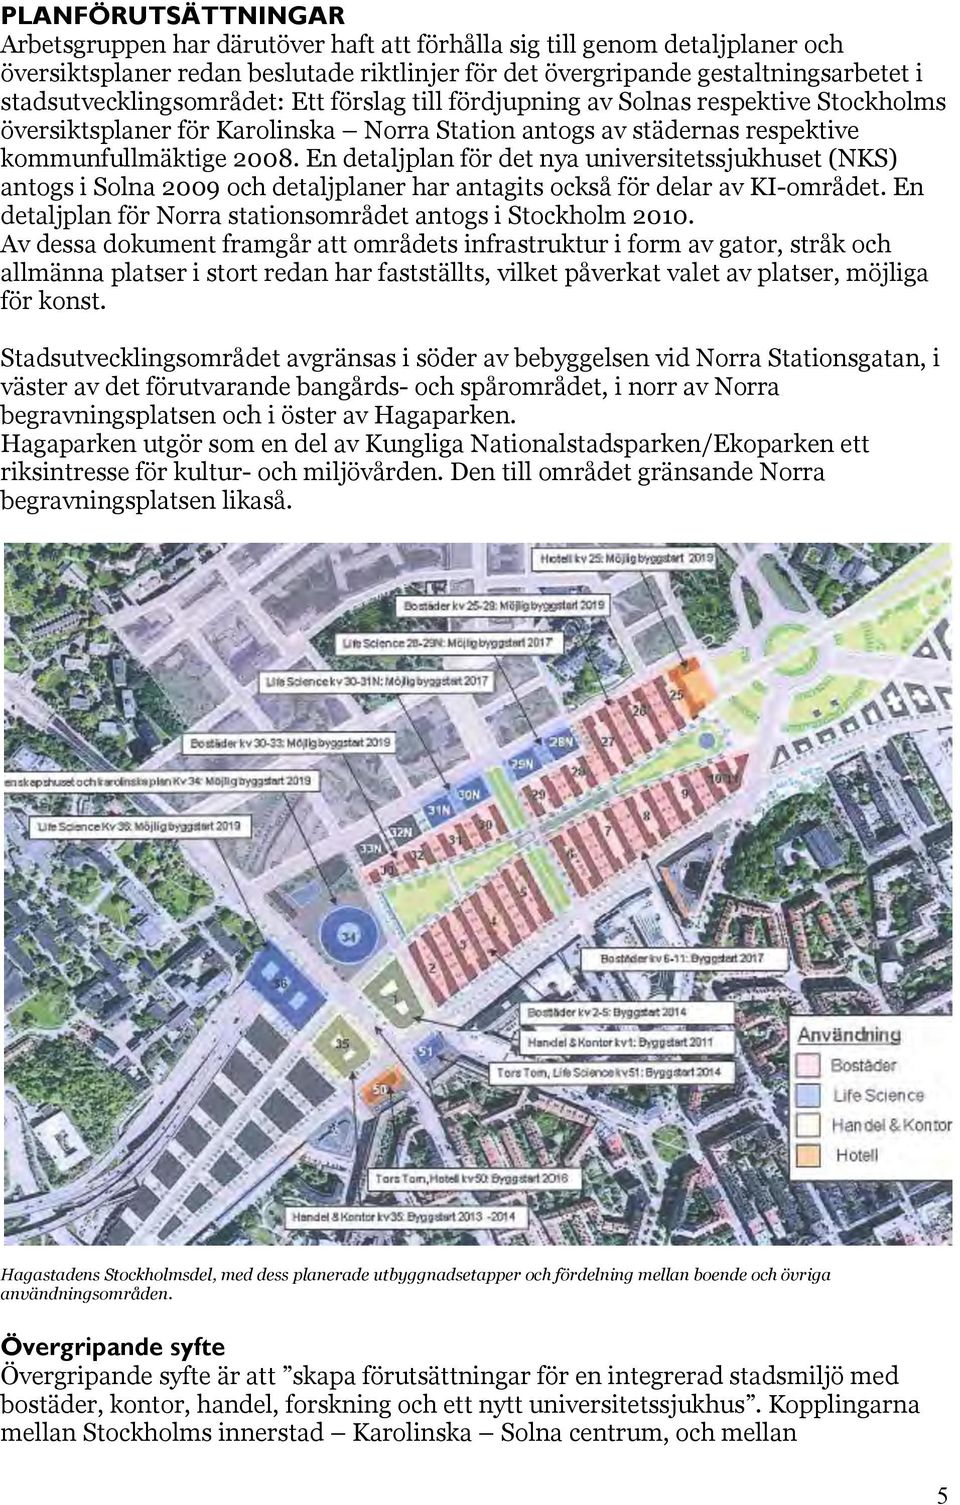 En detaljplan för det nya universitetssjukhuset (NKS) antogs i Solna 2009 och detaljplaner har antagits också för delar av KI-området. En detaljplan för Norra stationsområdet antogs i Stockholm 2010.